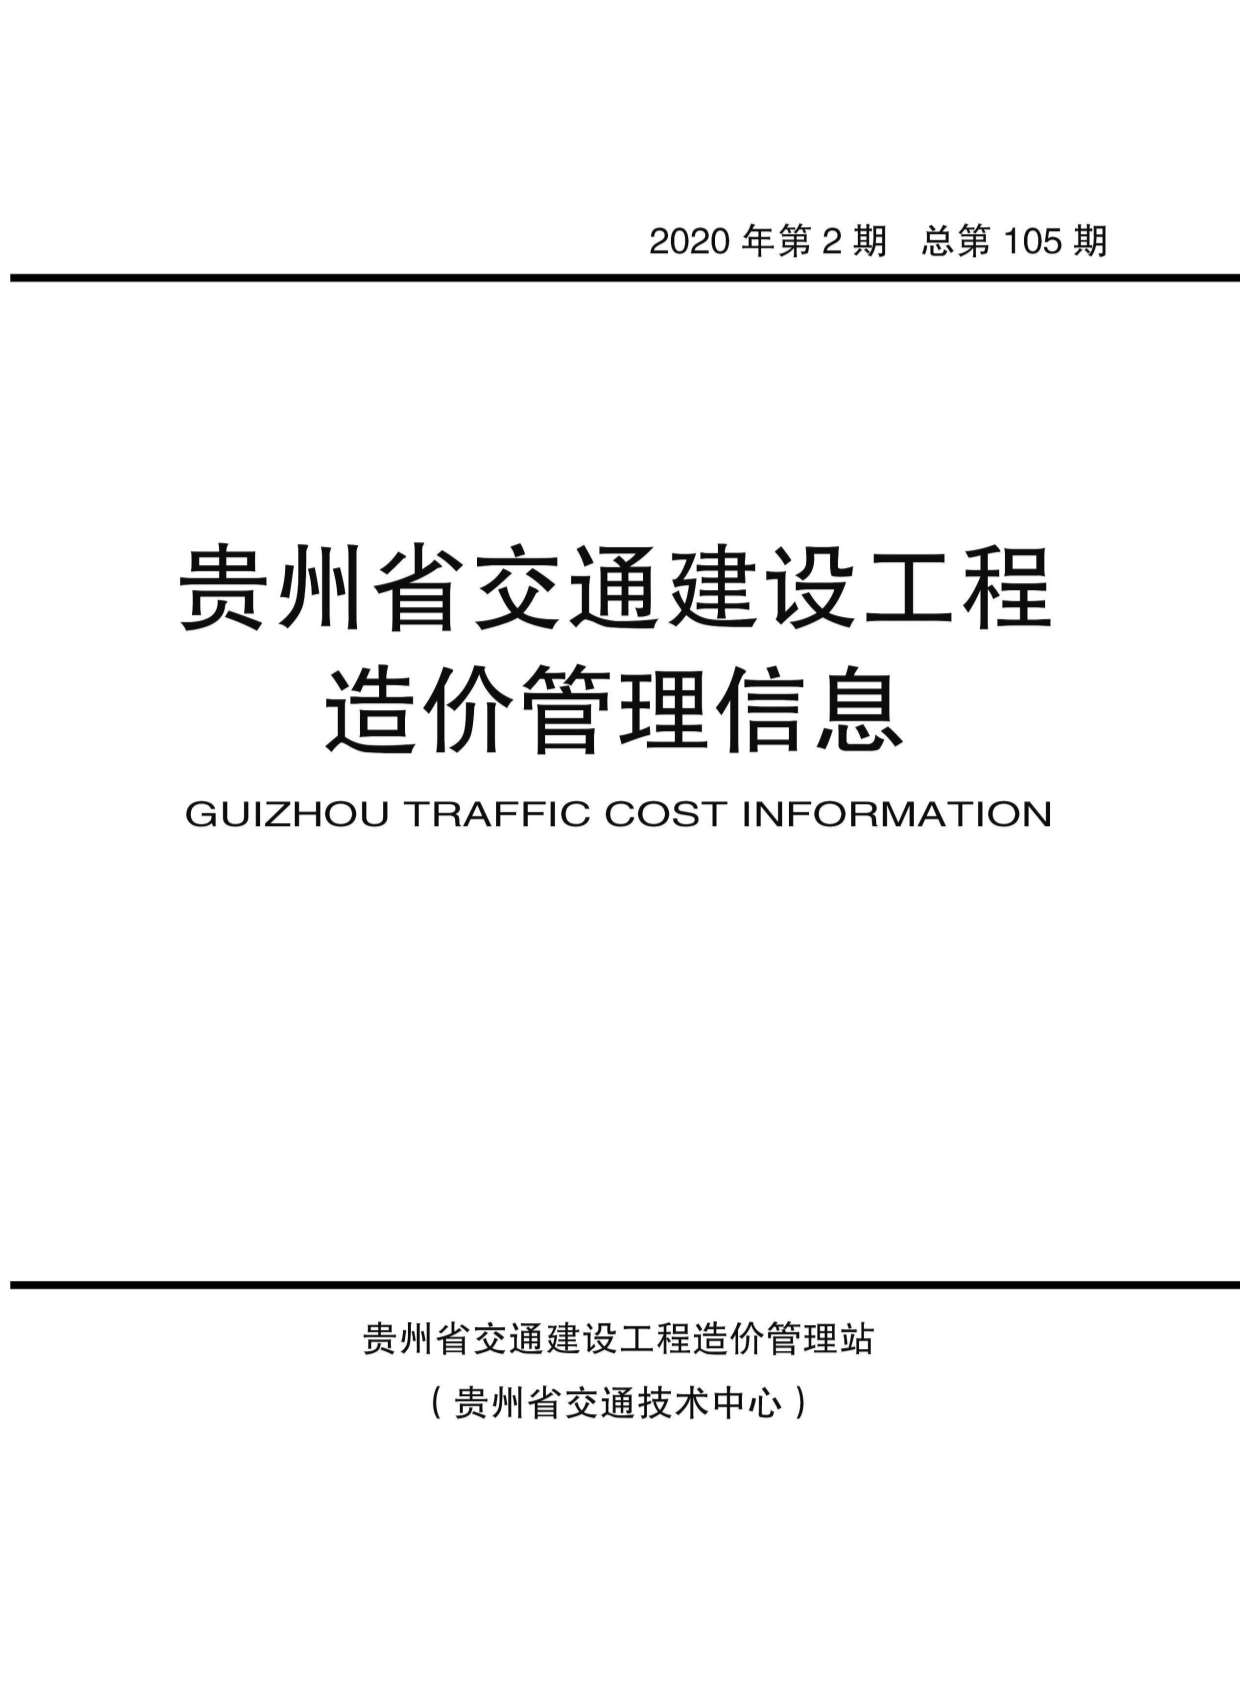 贵州省2020年2月造价库信息造价库信息网